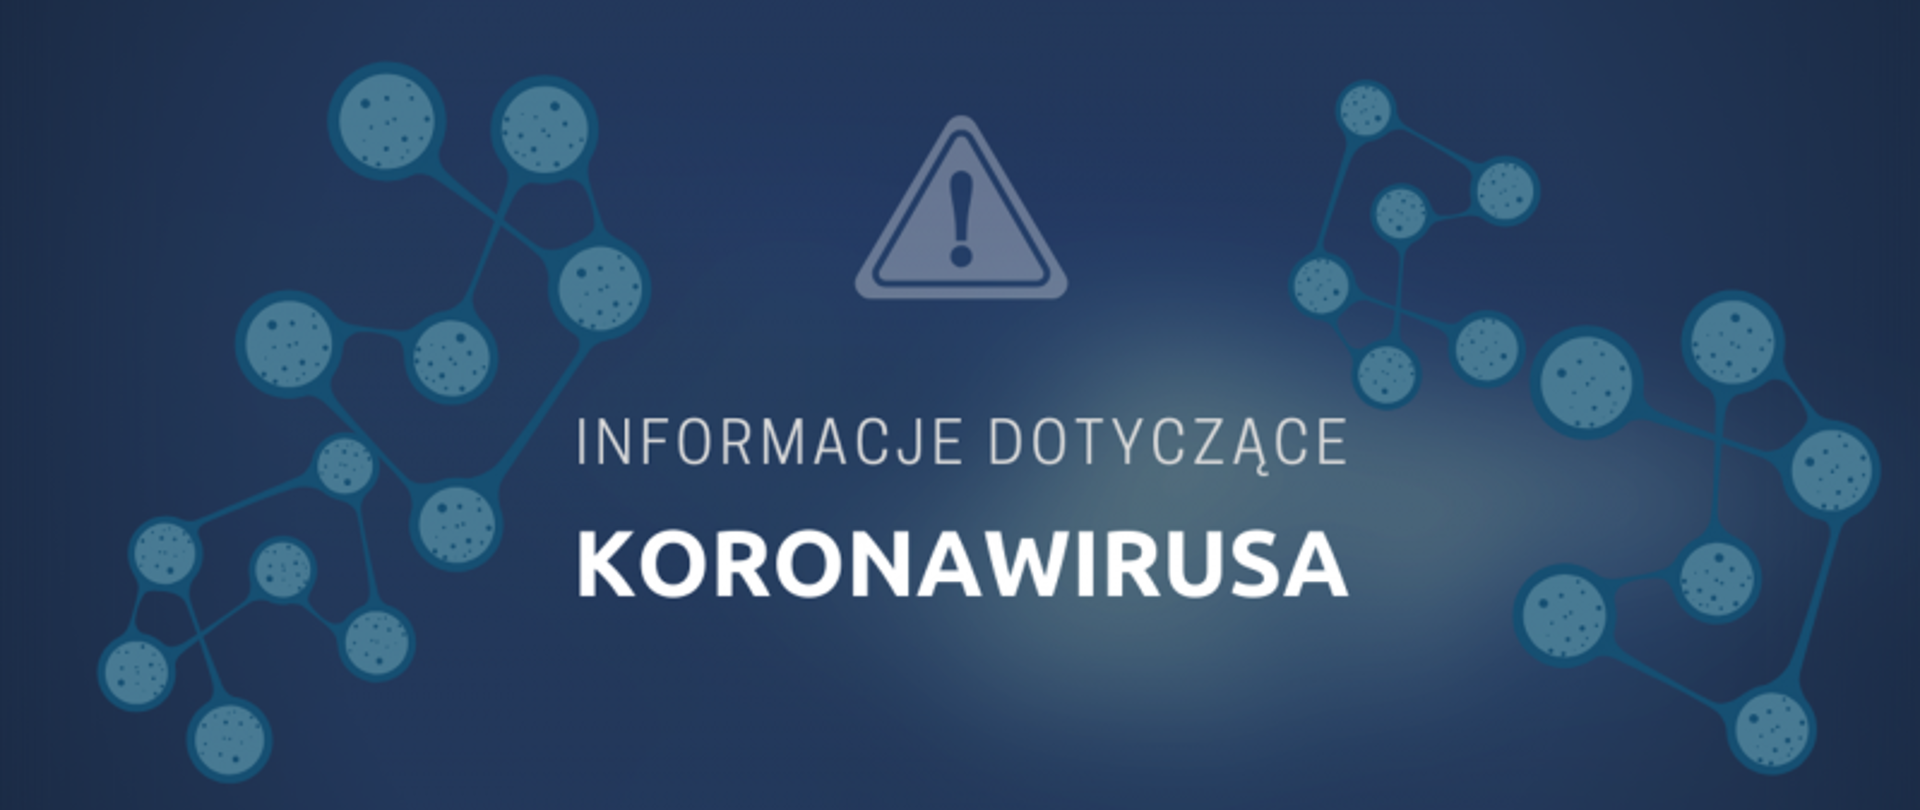 Informacje dotyczące koronawirusa